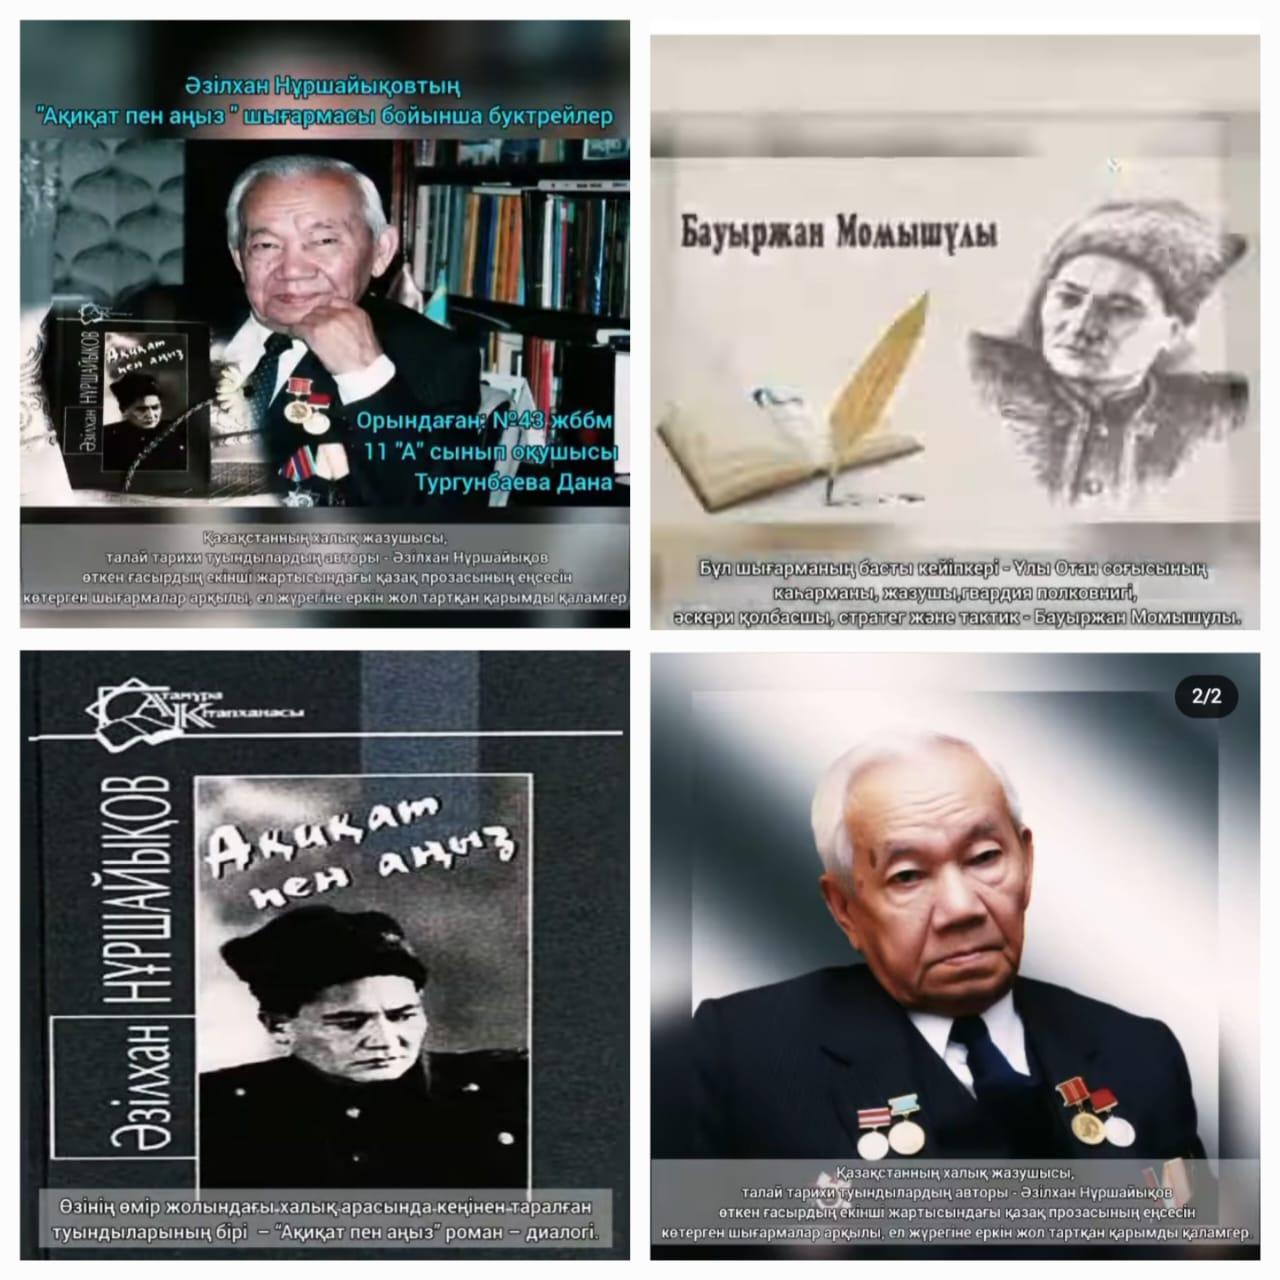 Оқуға құштар мектеп жобасы  аясында "Әзілхан Нұршайықовтың туғанына 100 жыл"